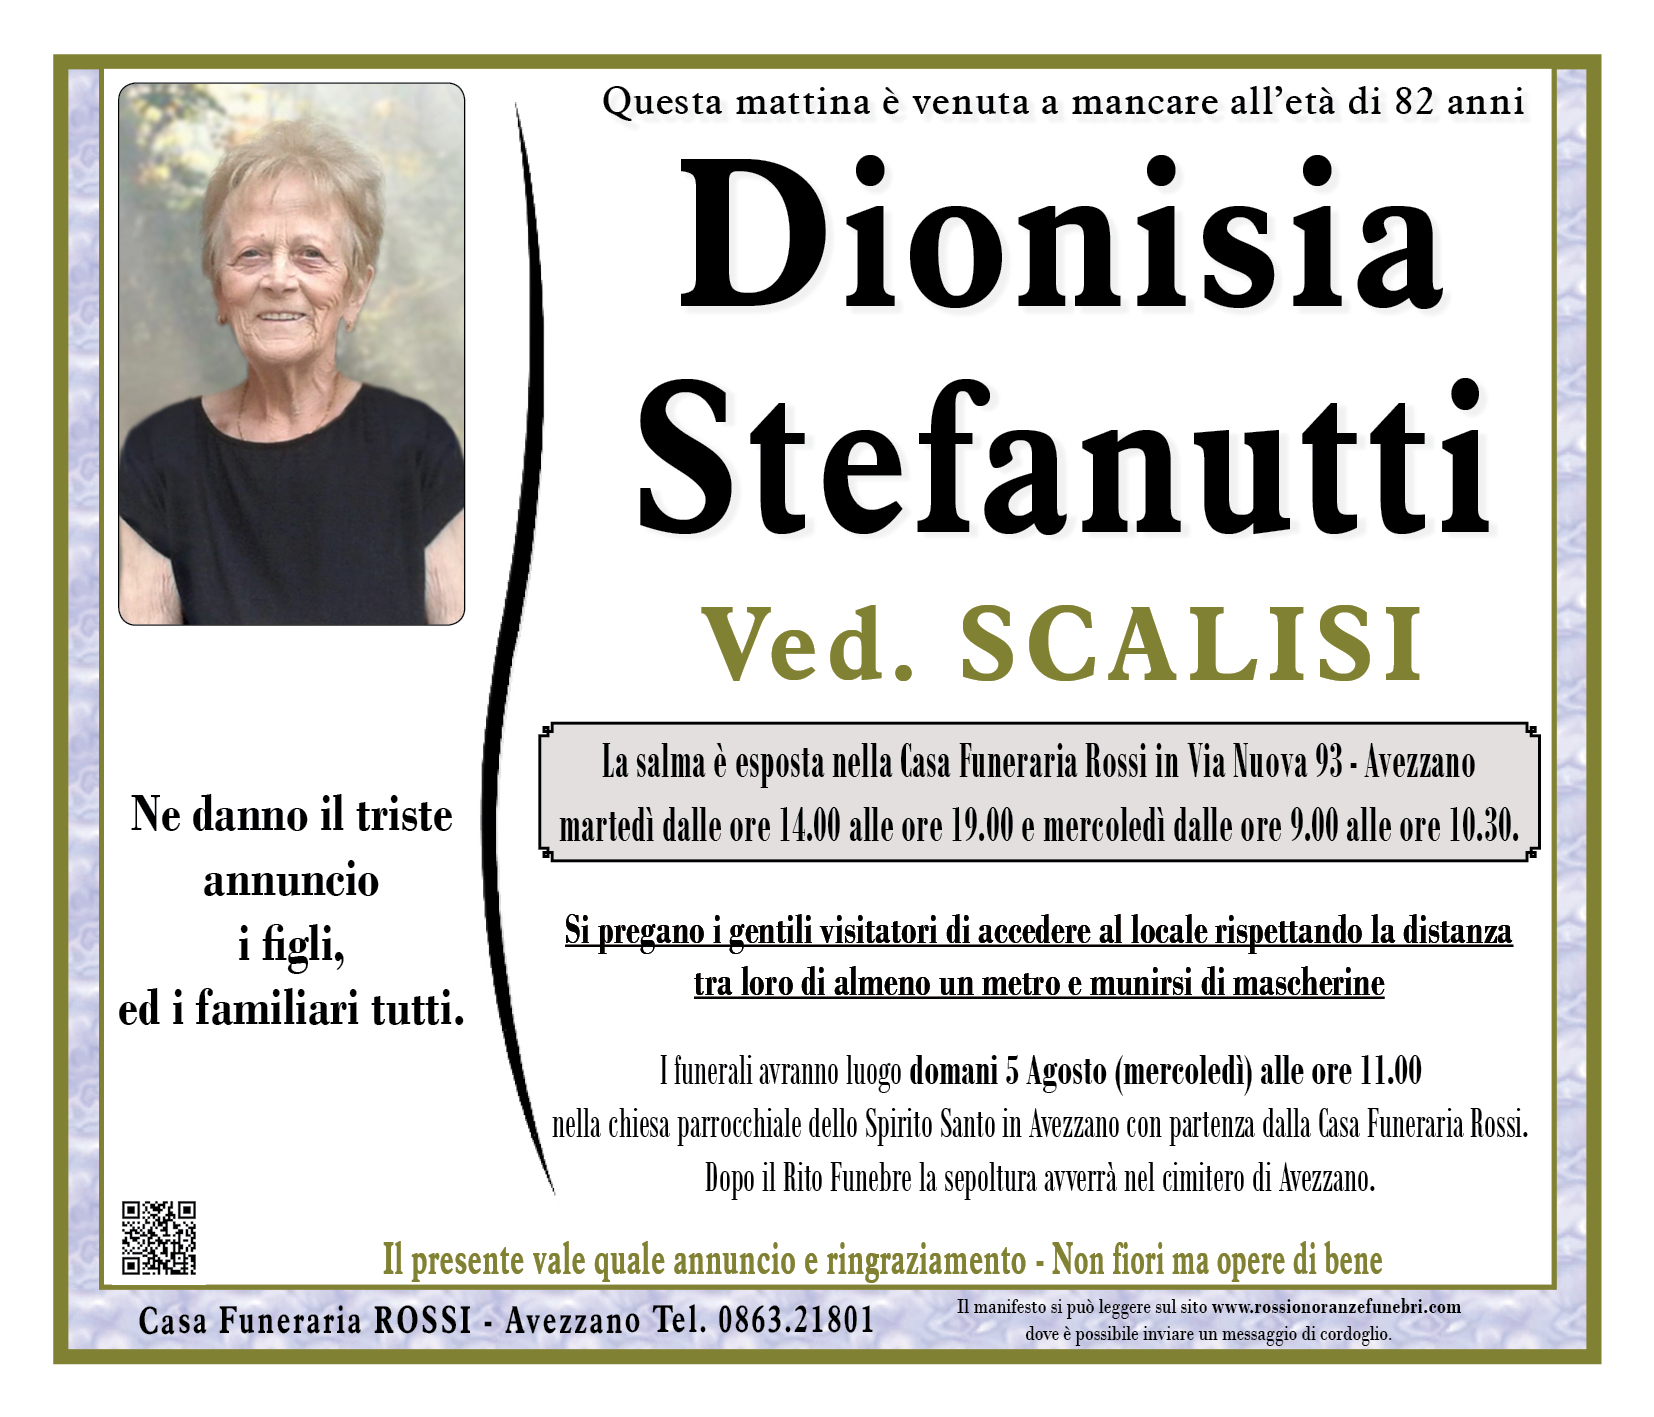 Dionisia Stefanutti